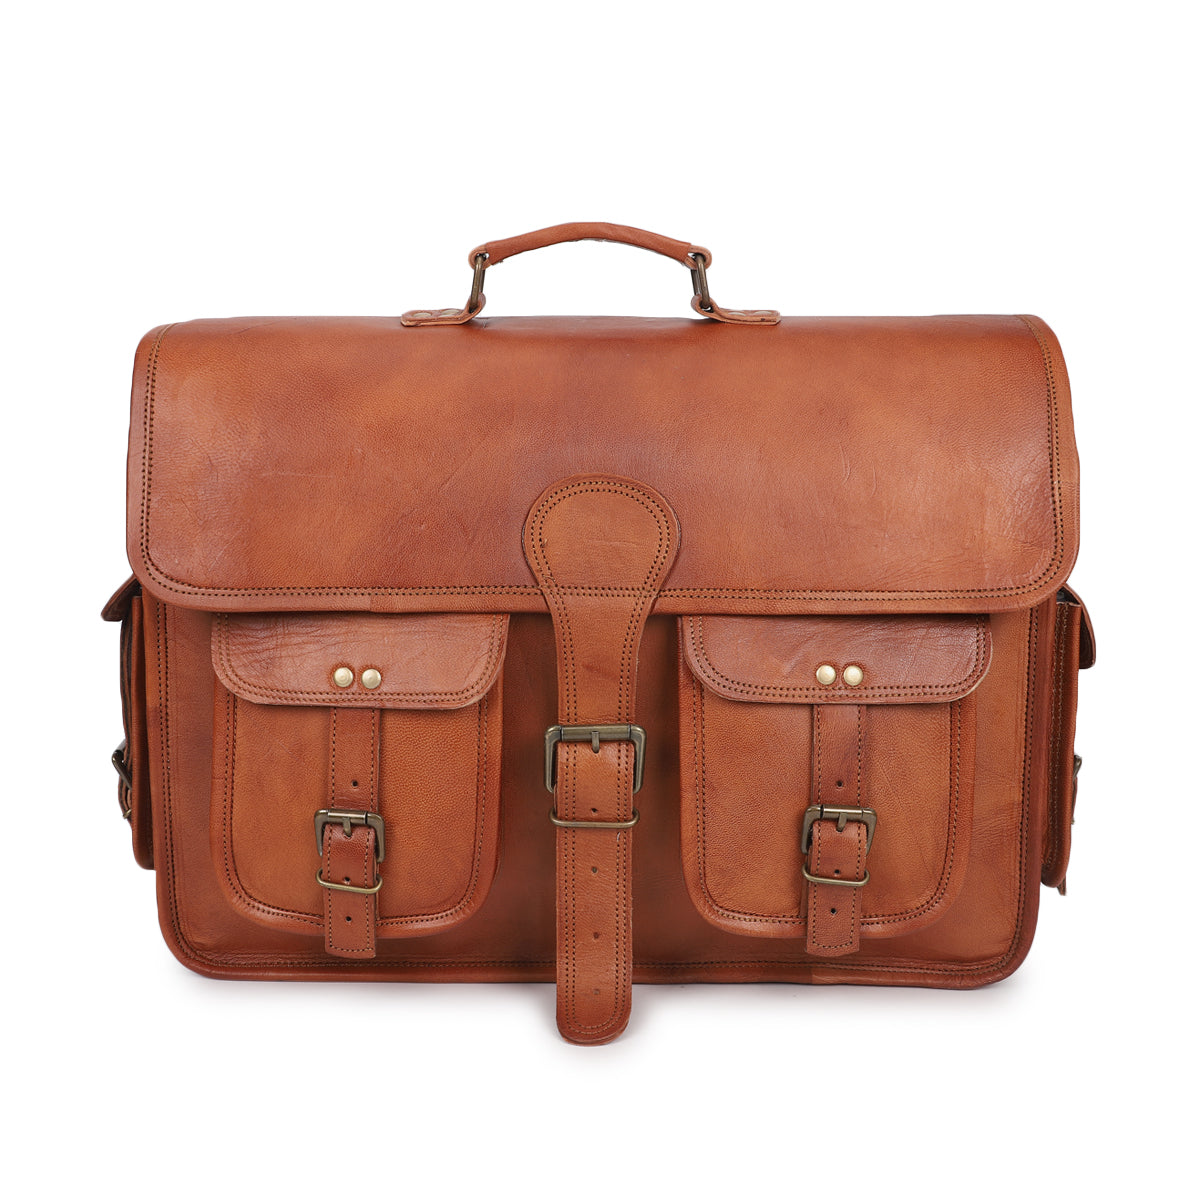 brown leather satchel messenger bag